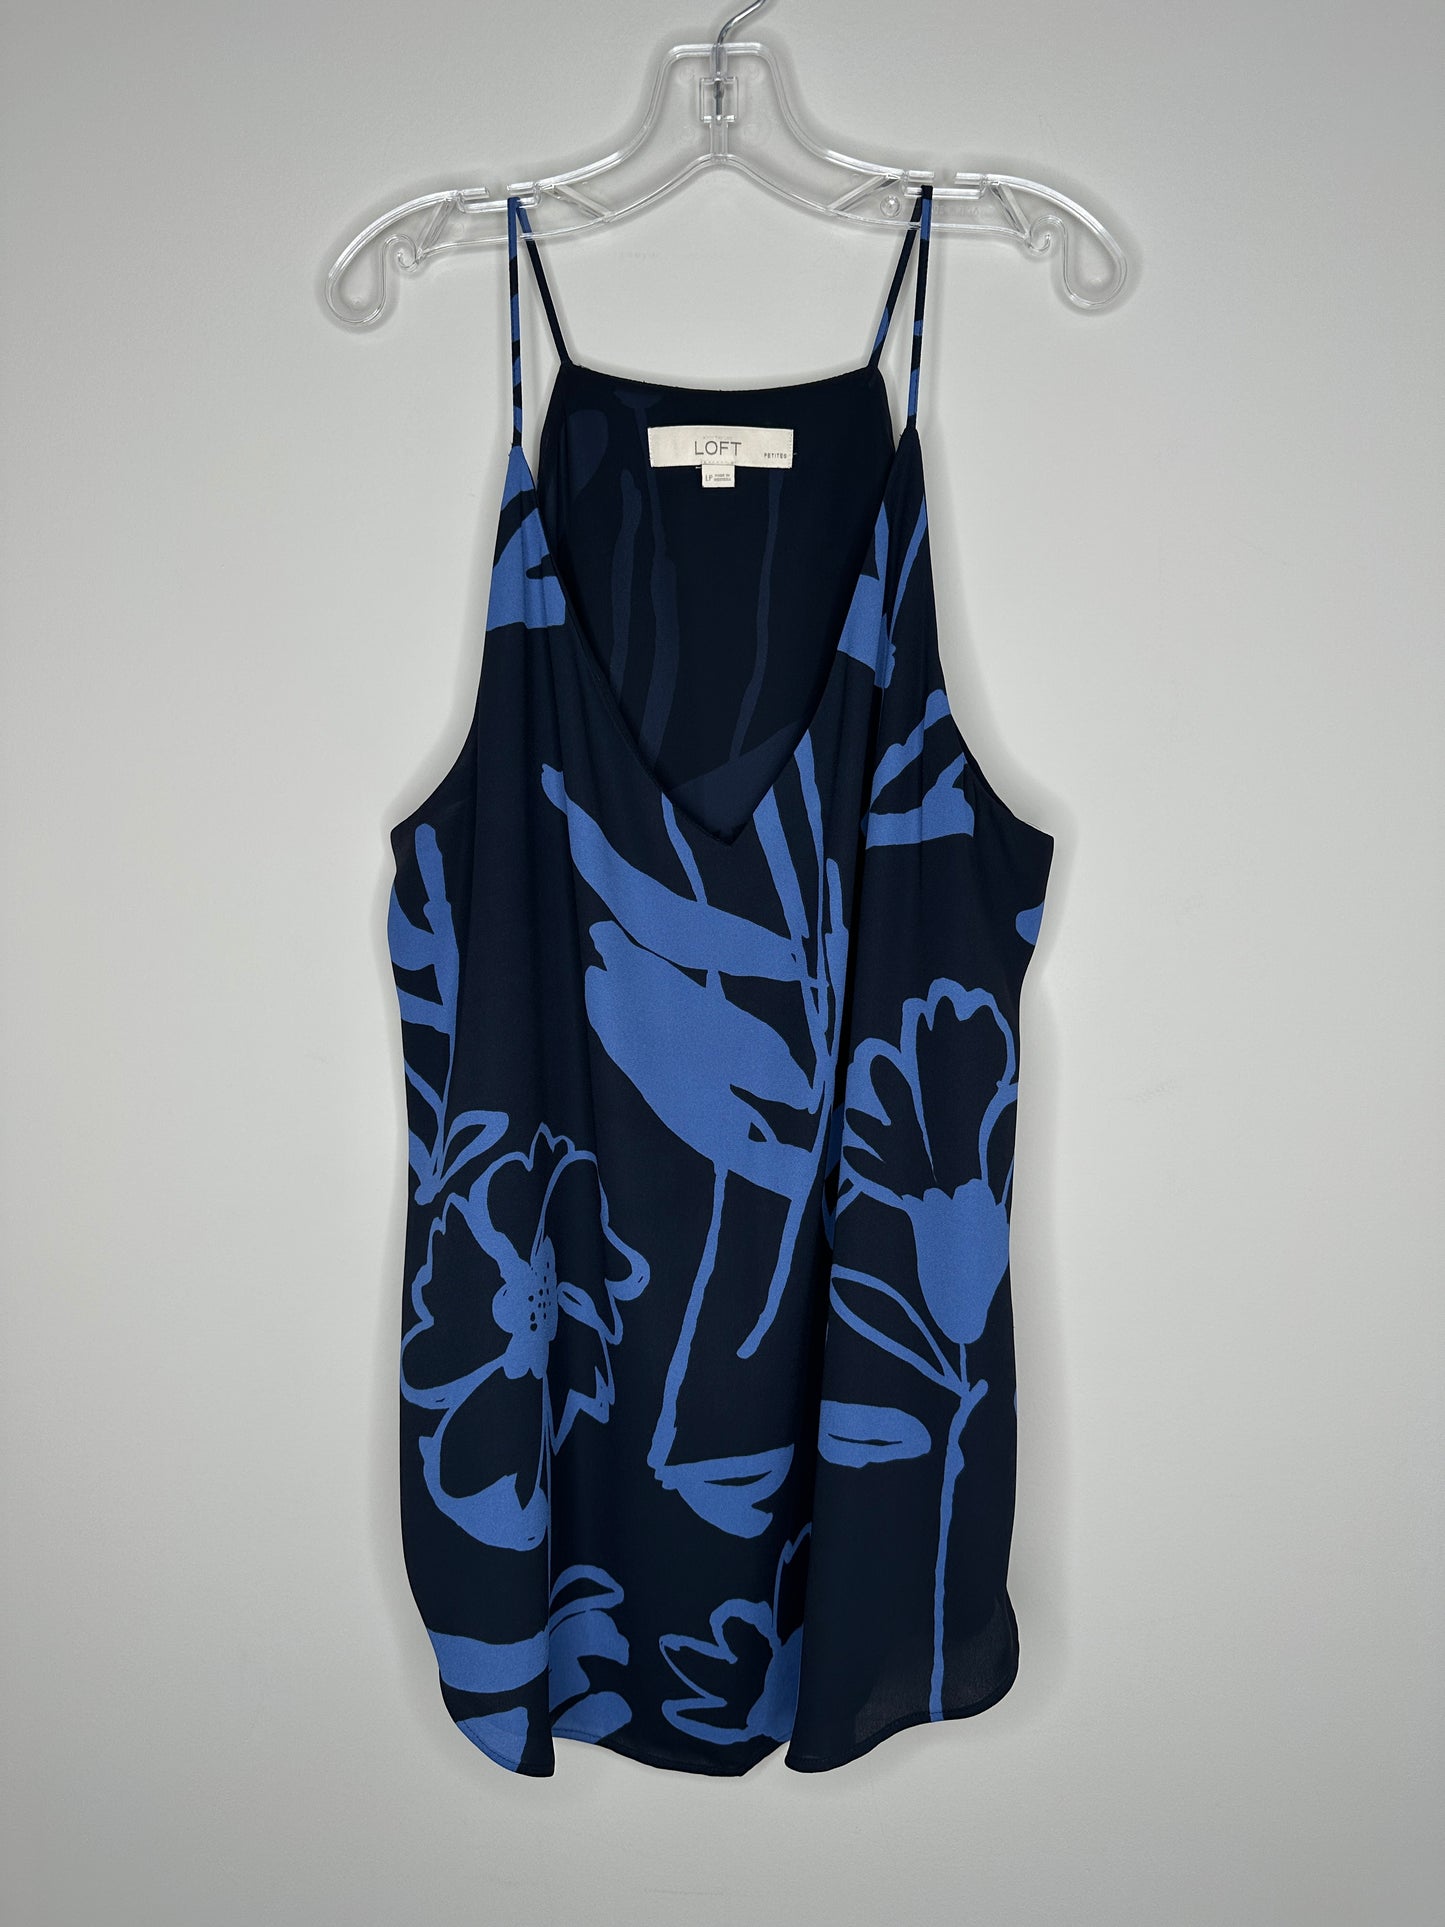 Ann Taylor LOFT Size LP Navy w/Blue Floral Pattern Spaghetti Strap Top